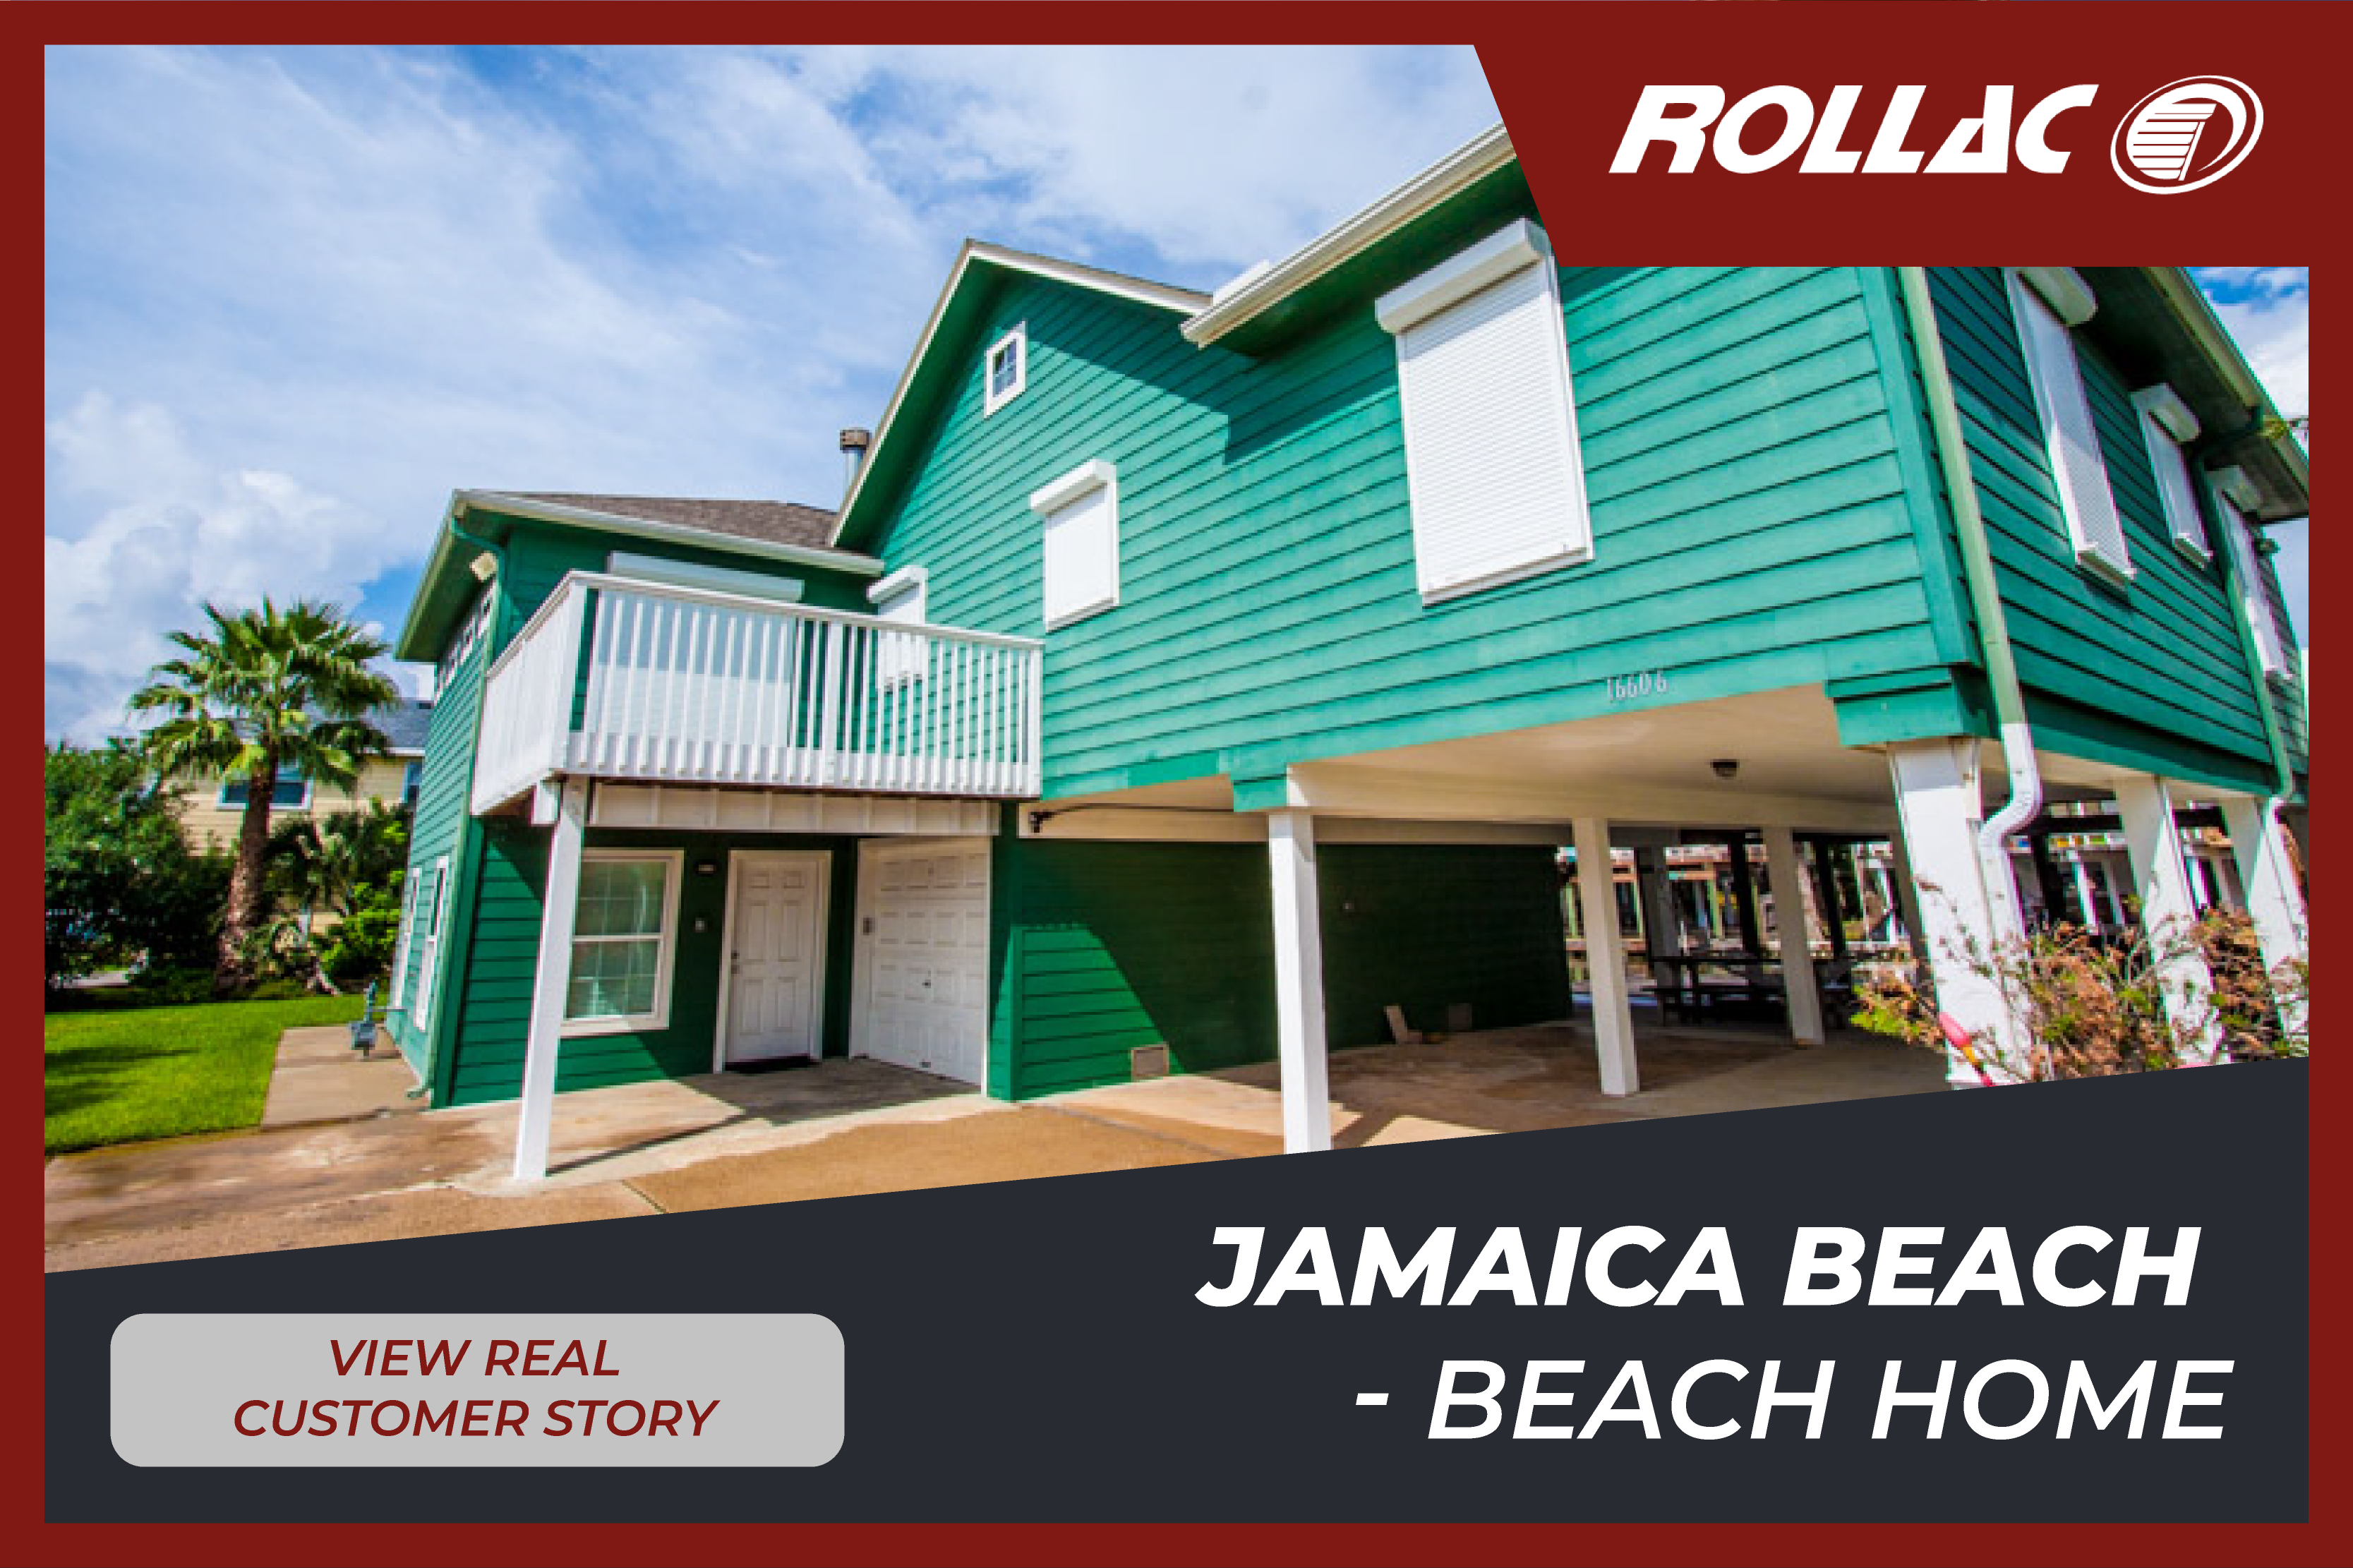 Jamaica Beach - Beach Home